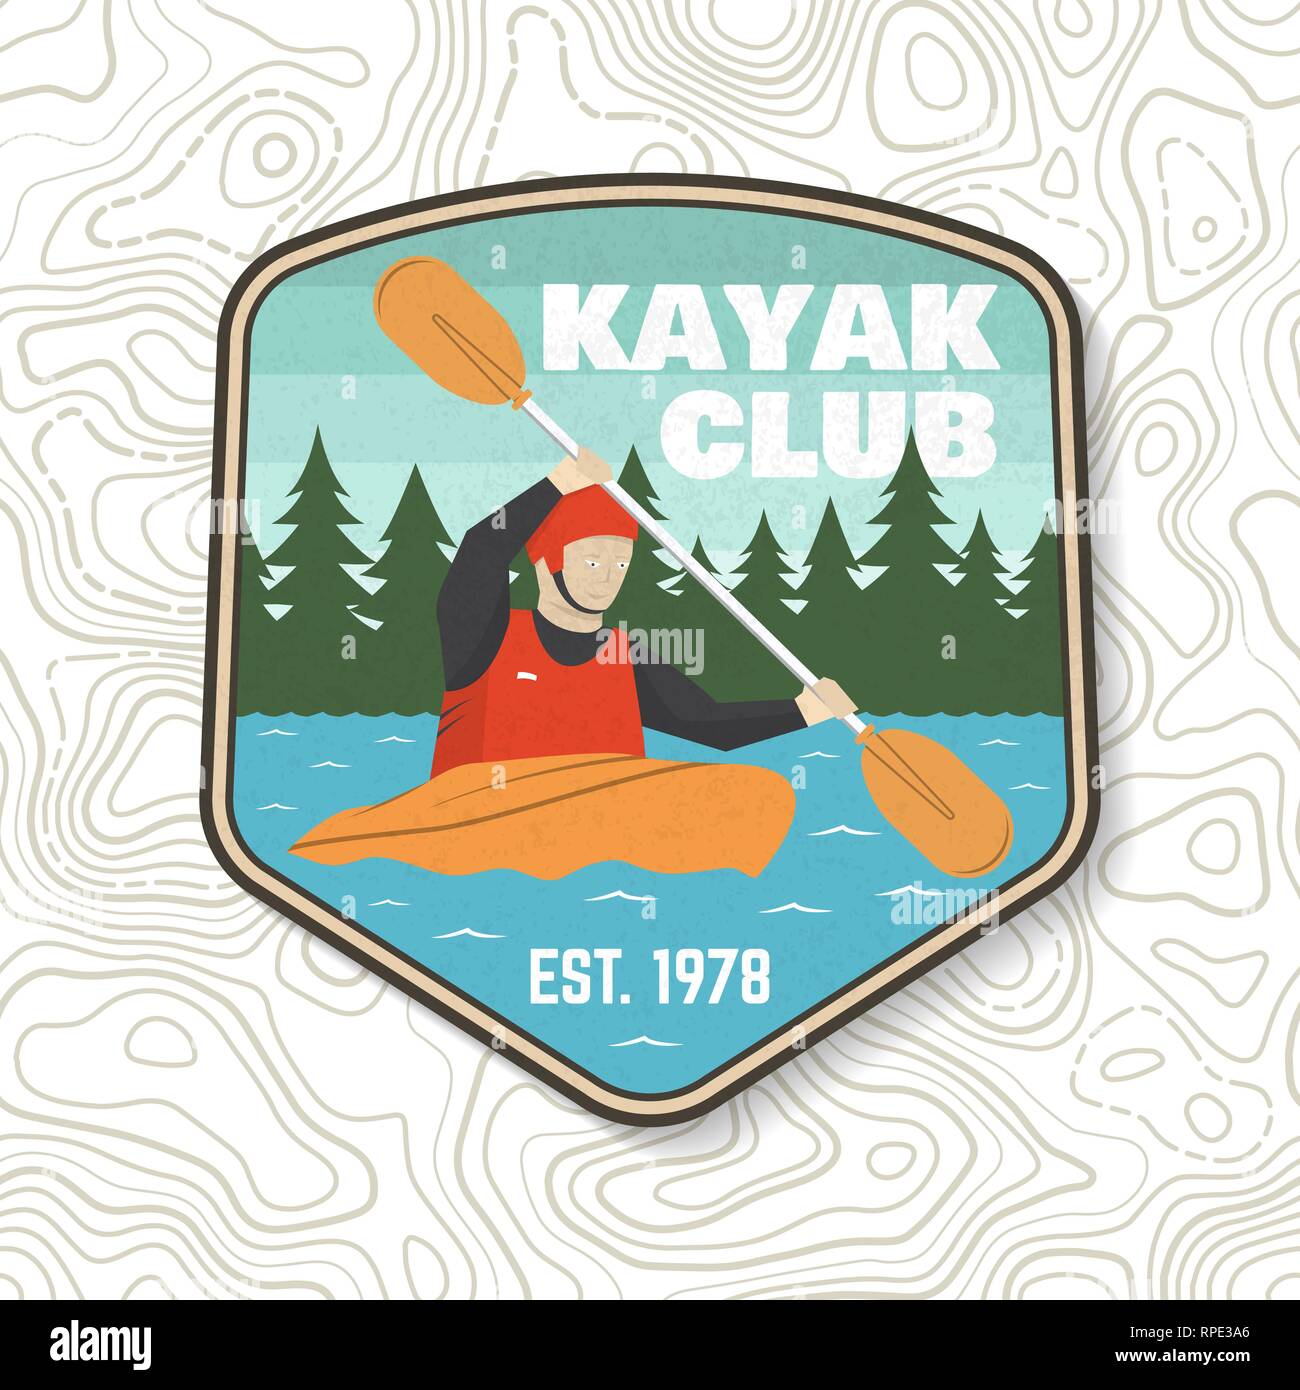 Kayak club patch. Illustrazione Vettoriale. Concetto di t-shirt, stampare il timbro o il raccordo a t. Vintage design tipografia con silhouette di kayaker. Extreme sport d'acqua. Outdoor adventure emblemi, kayak patch. Illustrazione Vettoriale